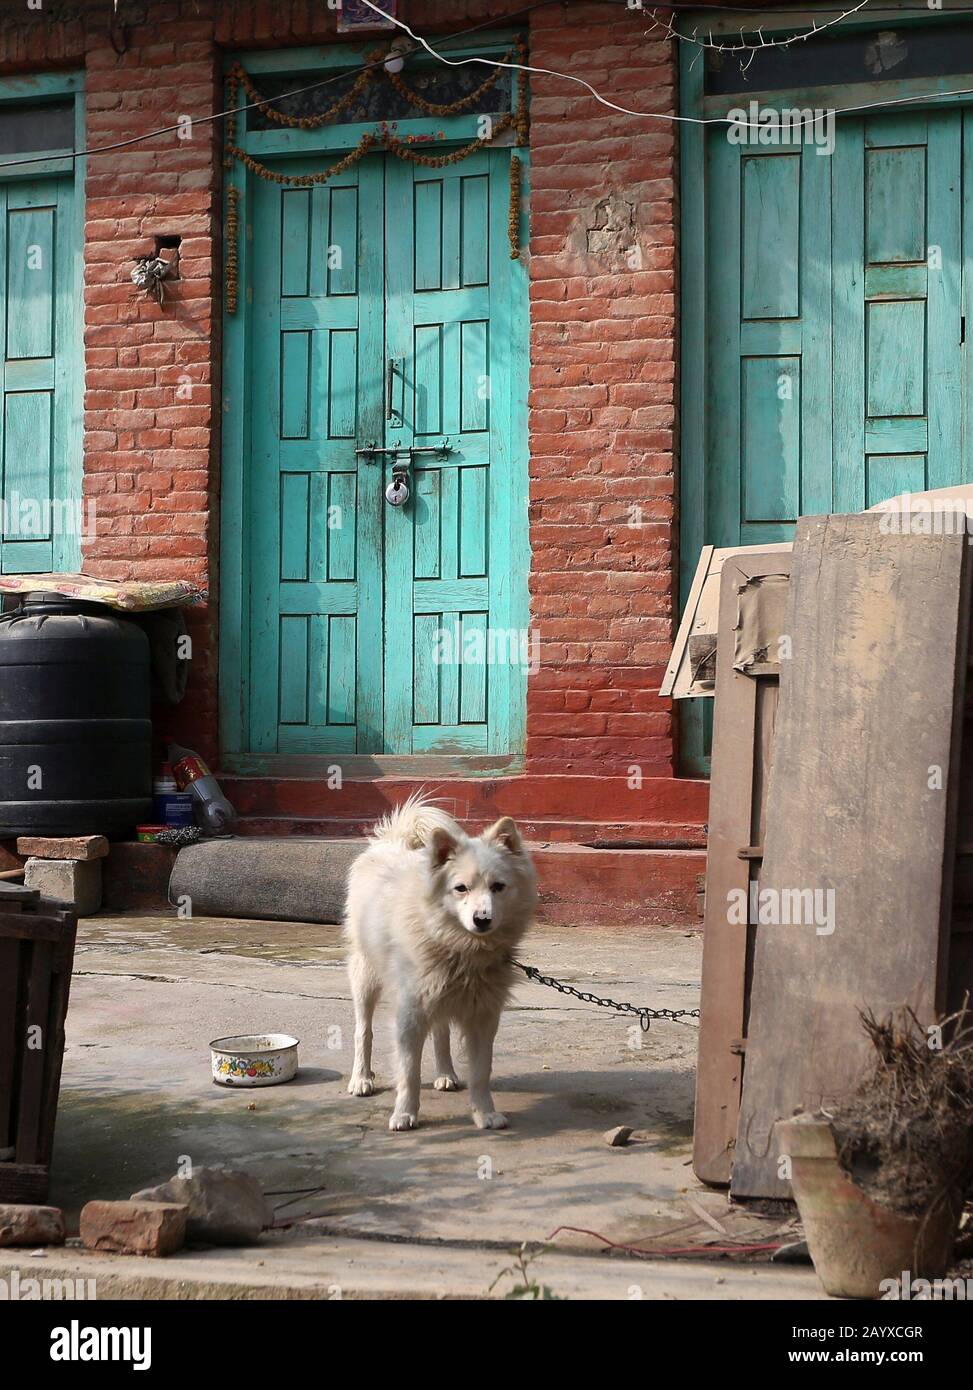 Bhaktapur, Nepal. Februar 2020. Ein Hund ruht außerhalb eines leeren Hauses in der Nähe der Quarantänezone, nachdem er aufgrund der Angst vor einer Infektion mit Coronavirus in Bhaktapur, Nepal, verlassen wurde. Nepali-Bürger, die aus Wuhan, einer chinesischen Stadt, evakuiert werden, das Epizentrum des neuartigen Coronavirus, der jetzt COVID-19-Ausbruch, werden auf Symptome der Infektion in der Kharipati-Quarantänezone in Bhaktapur überwacht. Credit: Sunil Sharma/ZUMA Wire/Alamy Live News Stockfoto